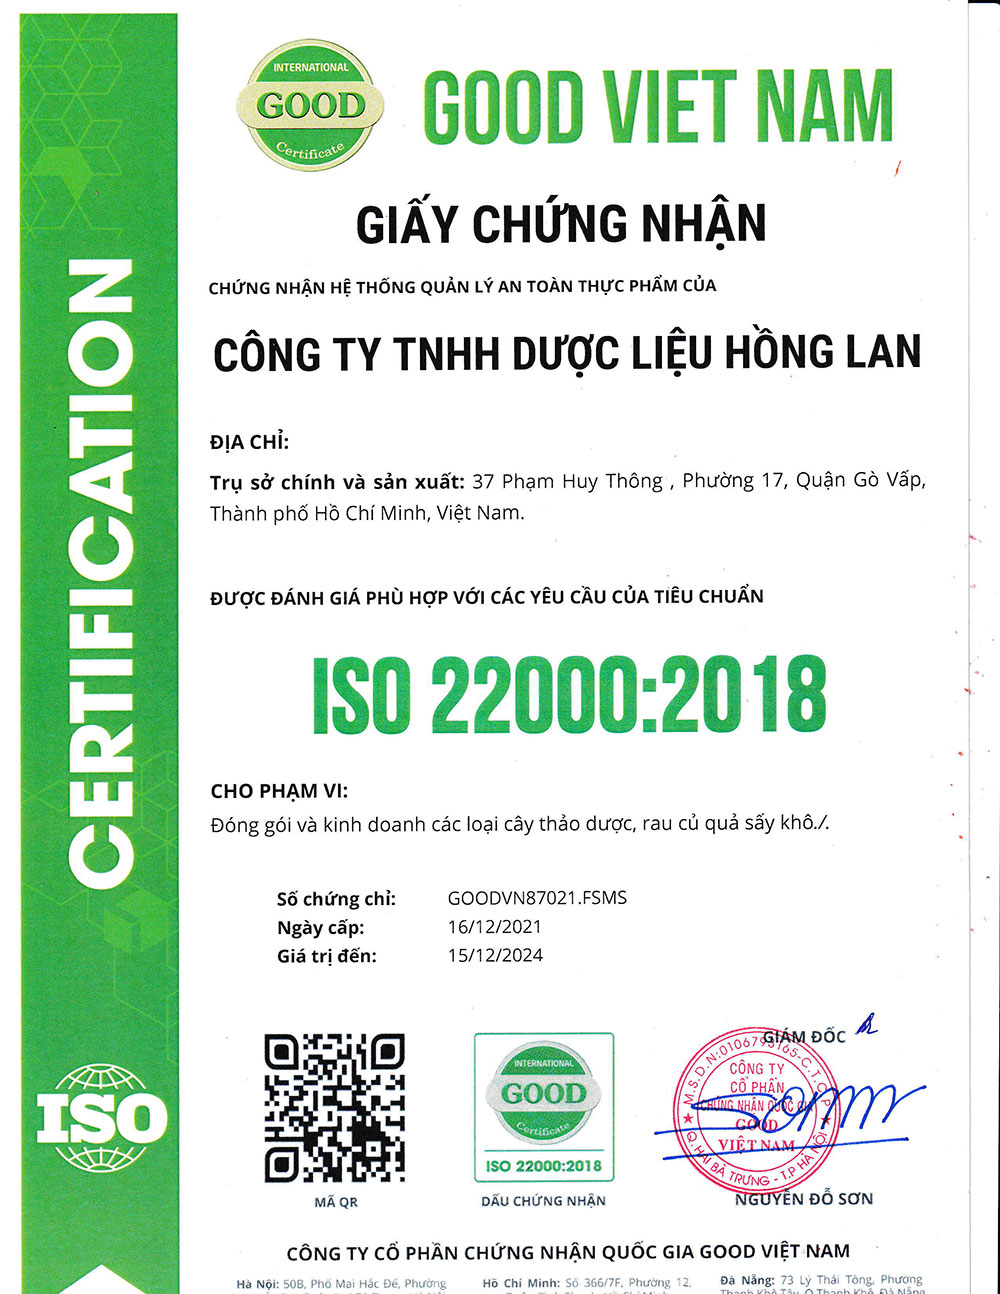 Trà Xuyên Tâm Liên dạng túi lọc được sản xuất theo hệ thống quản lý an toàn thực phẩm ISO 22000:2018 được cấp bởi công ty cổ phần chứng nhận Quốc Gia Good Việt Nam (Good Viet Nam Certification Joint Stock Company)